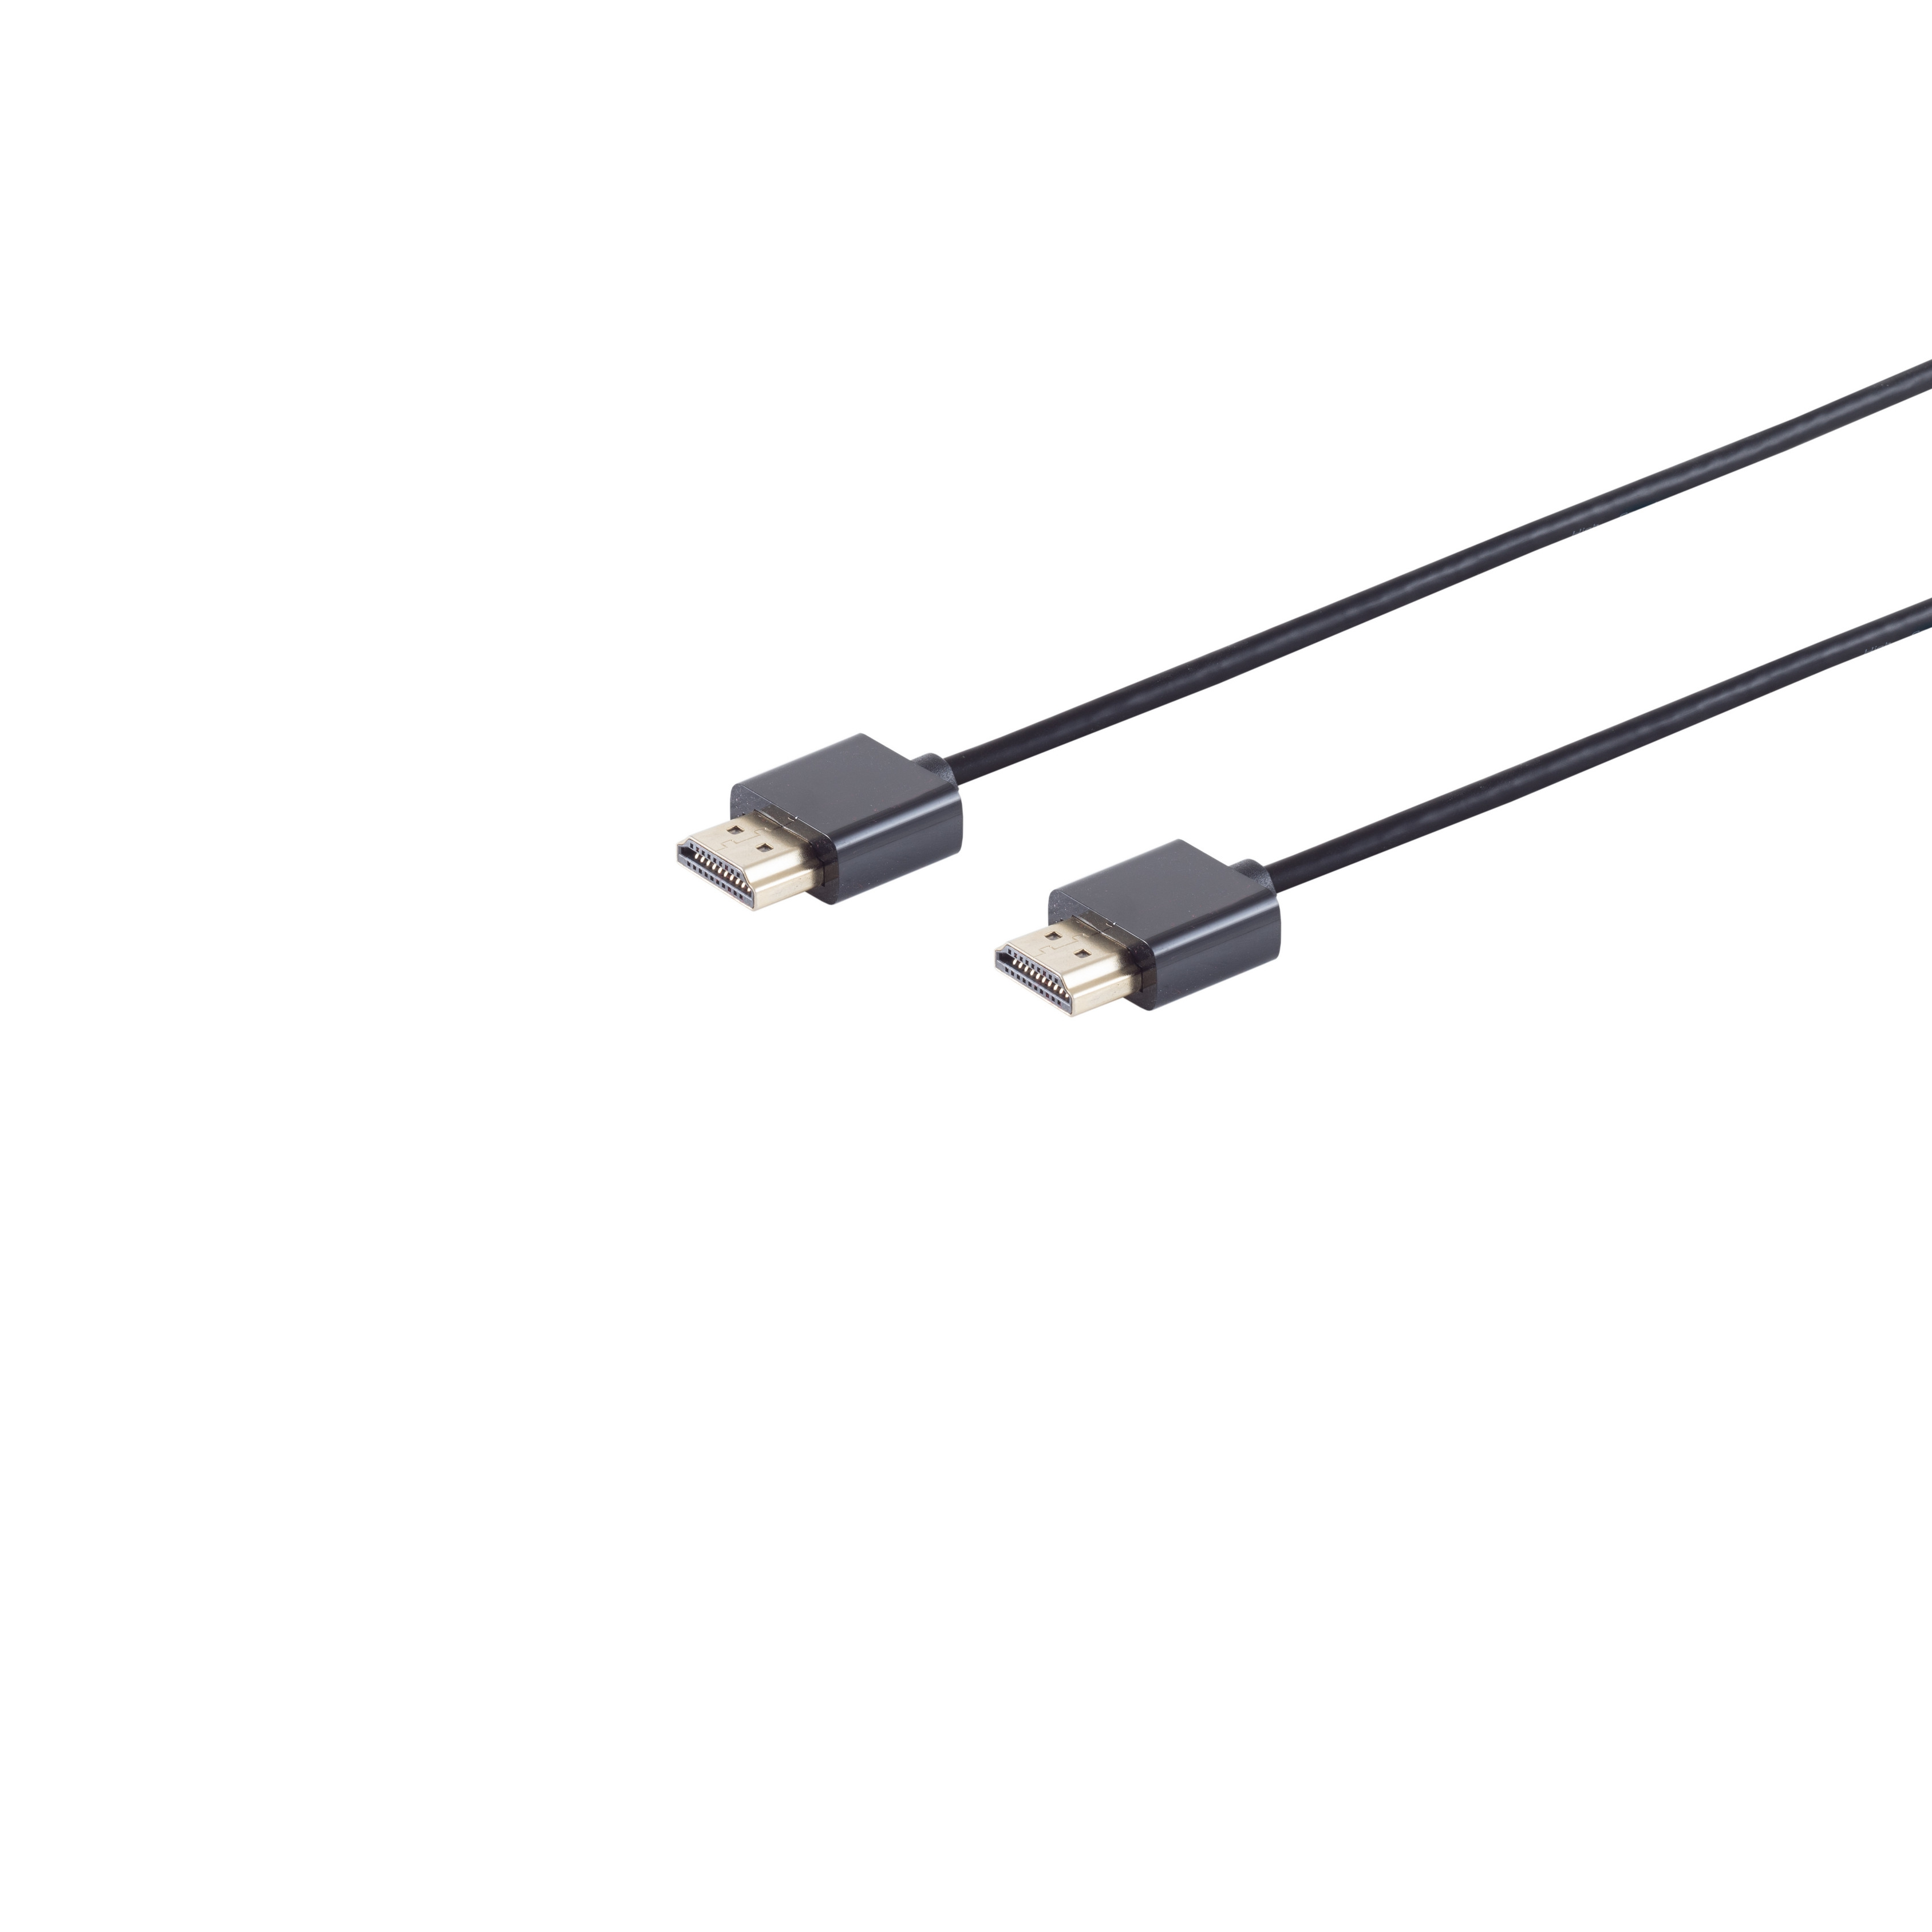 S/CONN A-Stecker HDMI extra dünn CONNECTIVITY HDMI 1,5m Kabel / HDMI A-Stecker MAXIMUM